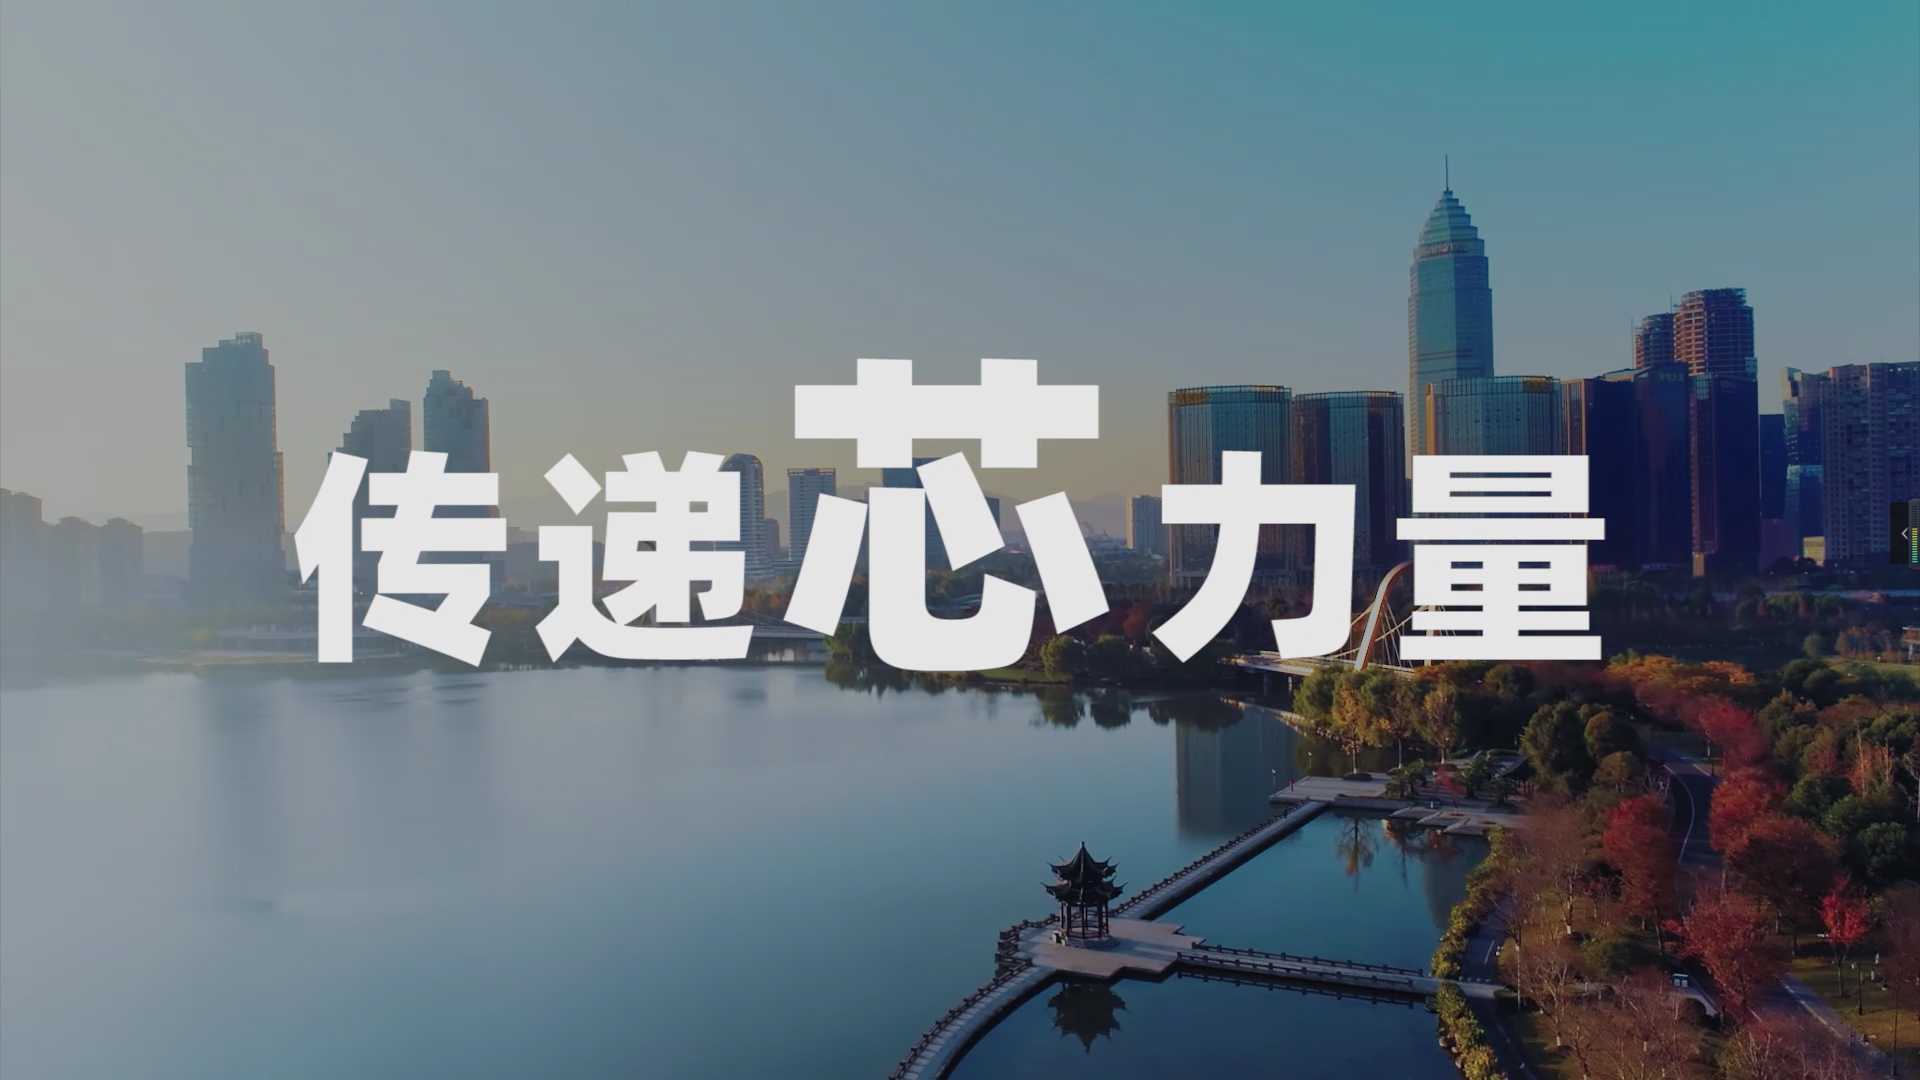 绍兴集成电路小镇宣传片2022